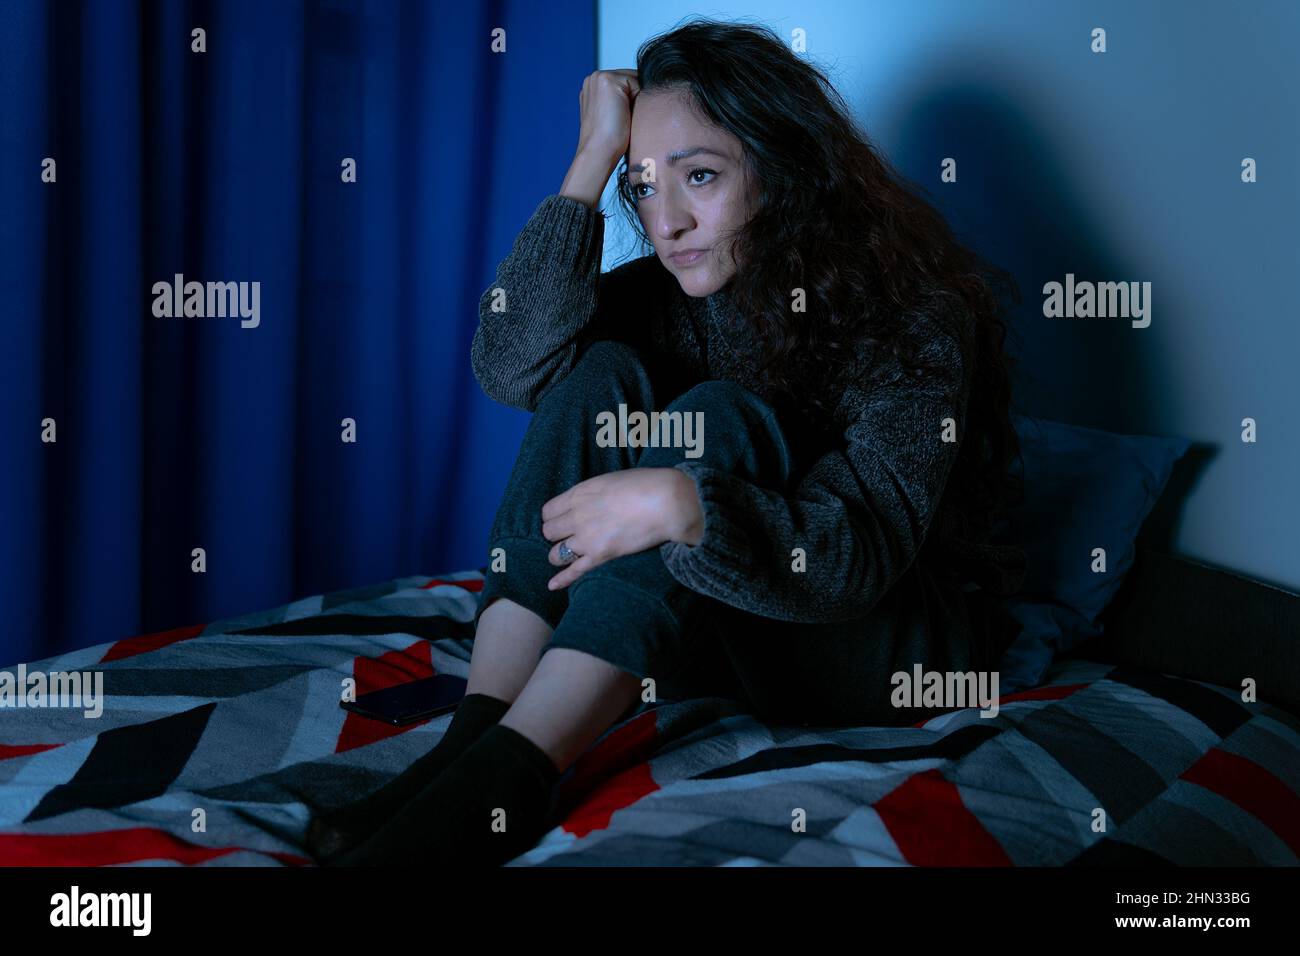 Insomnio, mujer deprimida sentada en la cama por la noche, no puede dormir de insomnio Foto de stock